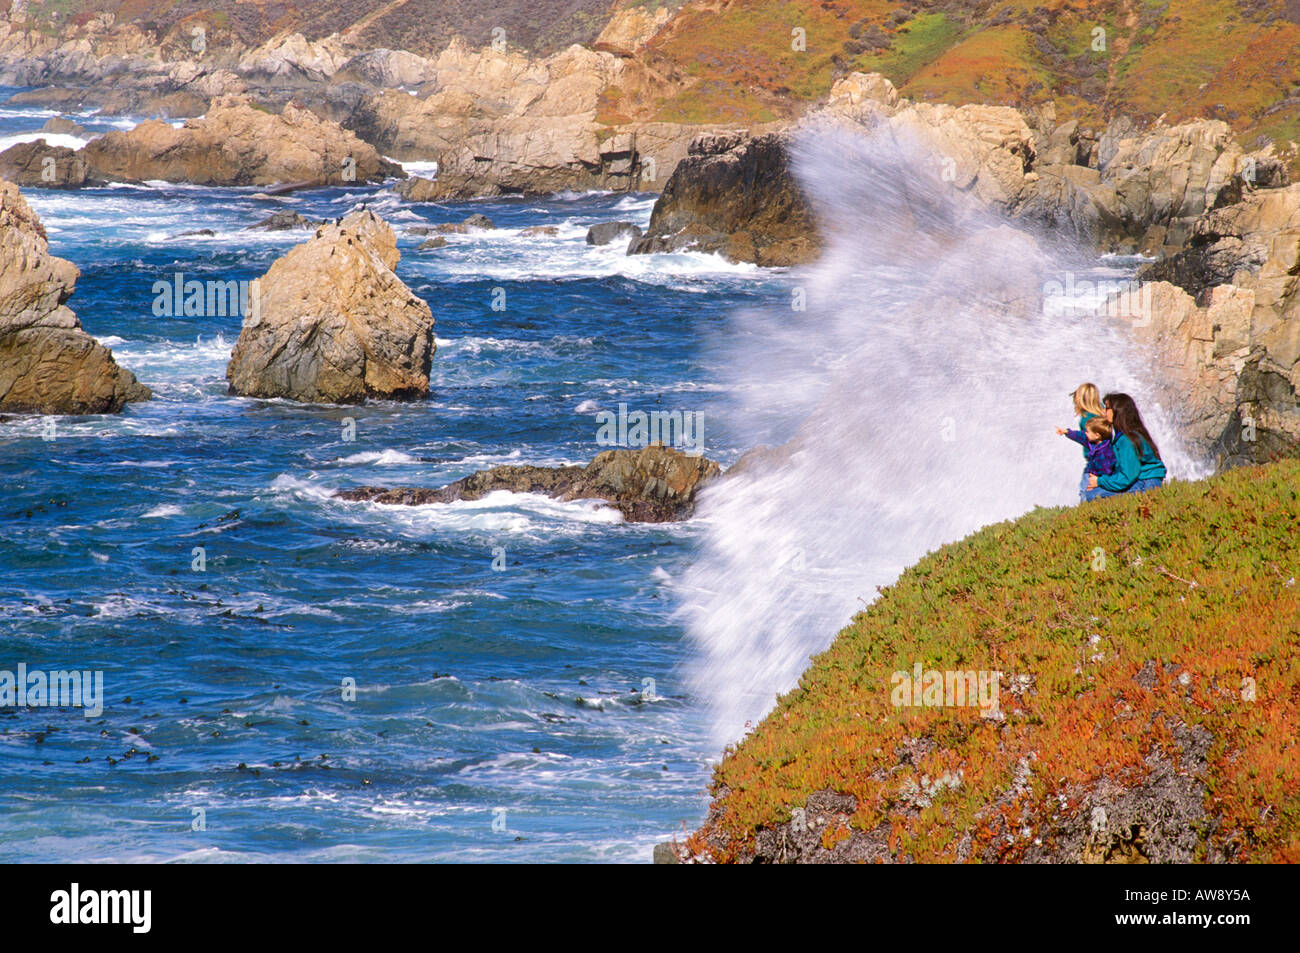 La madre y los niños (edades de 5 y 2), viendo grandes olas desde un acantilado en la costa del Pacífico de California Big Sur Foto de stock